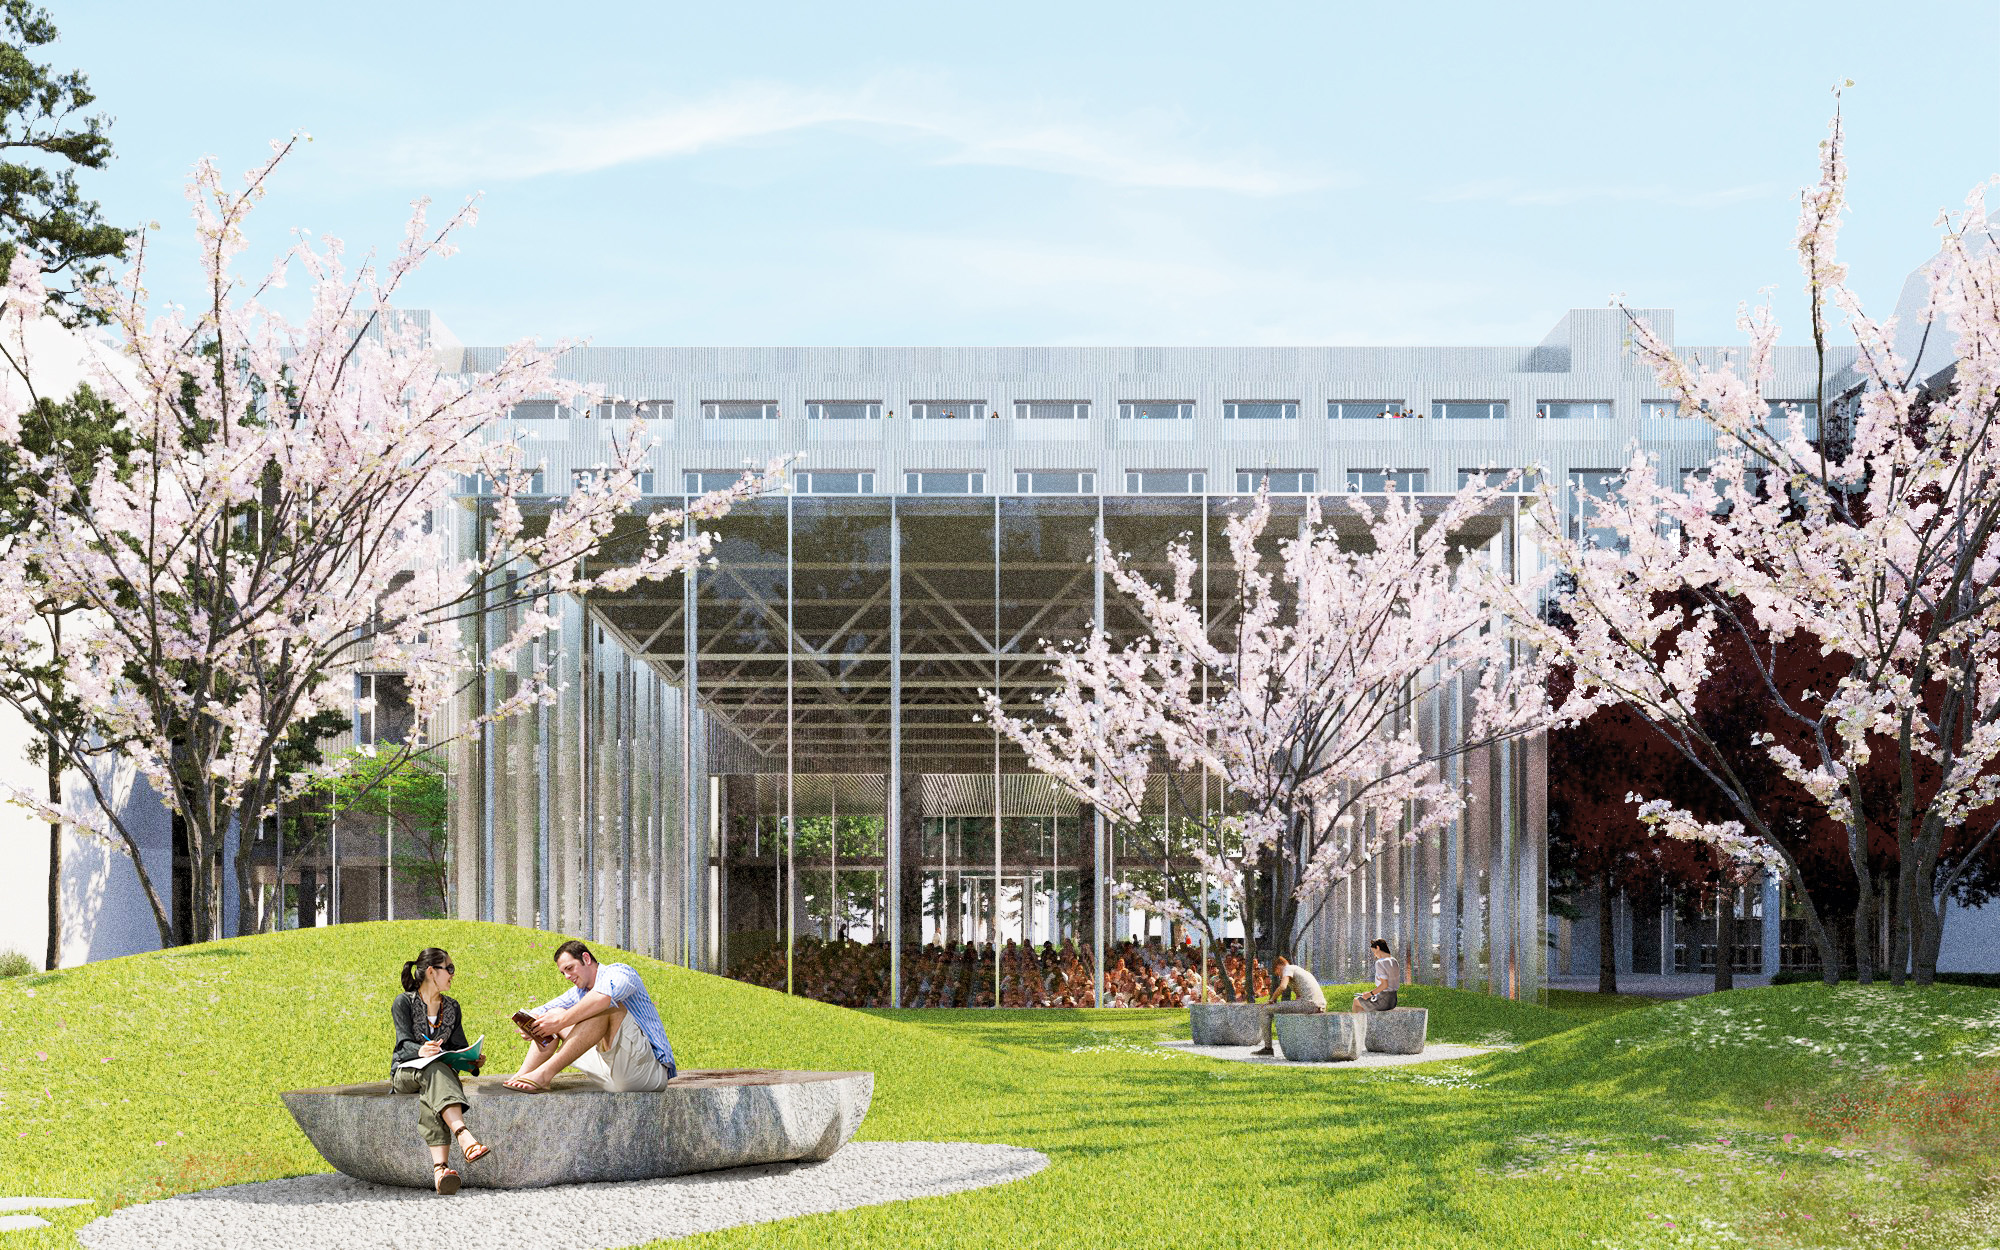 Відновлений корпус і сад з квітучими деревами: архітектори представили проєкт відбудови університету в Ірпені